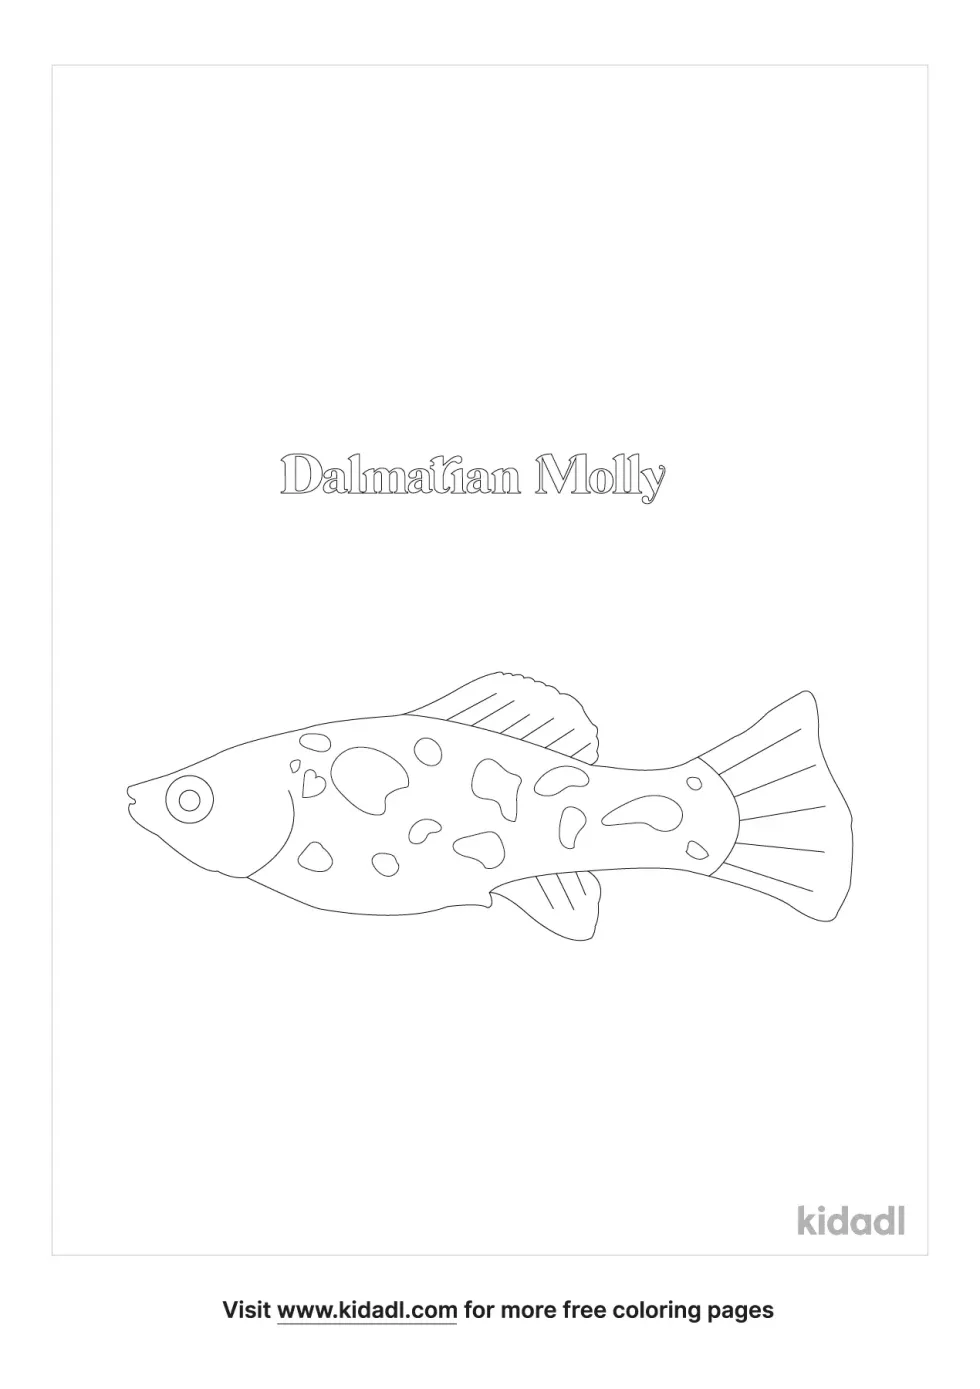 Dalmatian Molly Fish